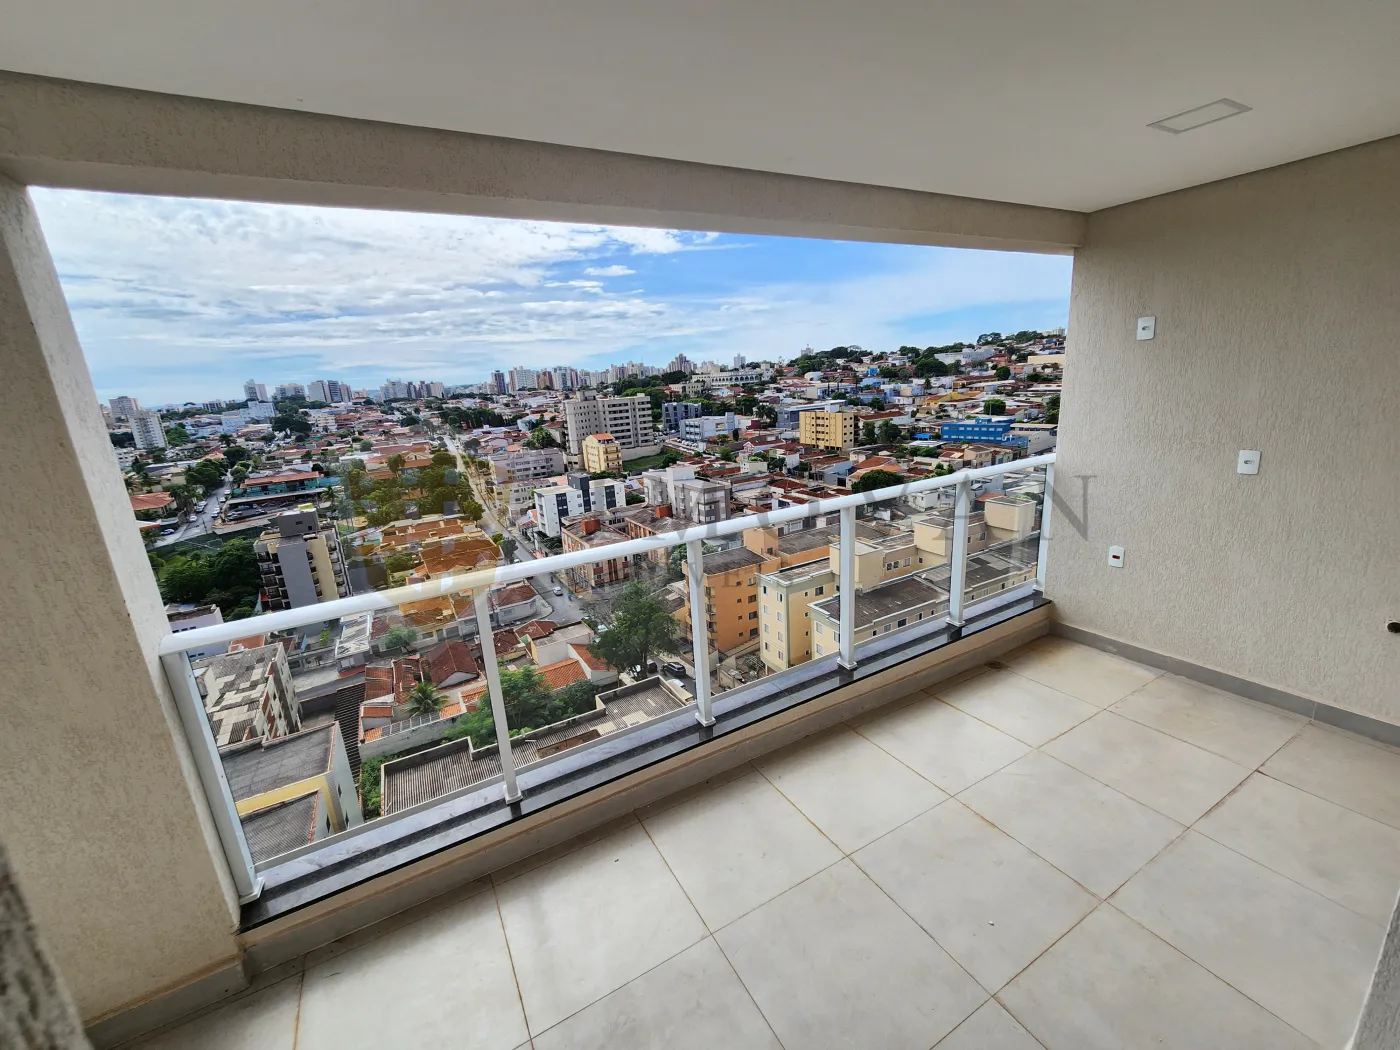 Comprar Apartamento / Padrão em Ribeirão Preto R$ 520.000,00 - Foto 13